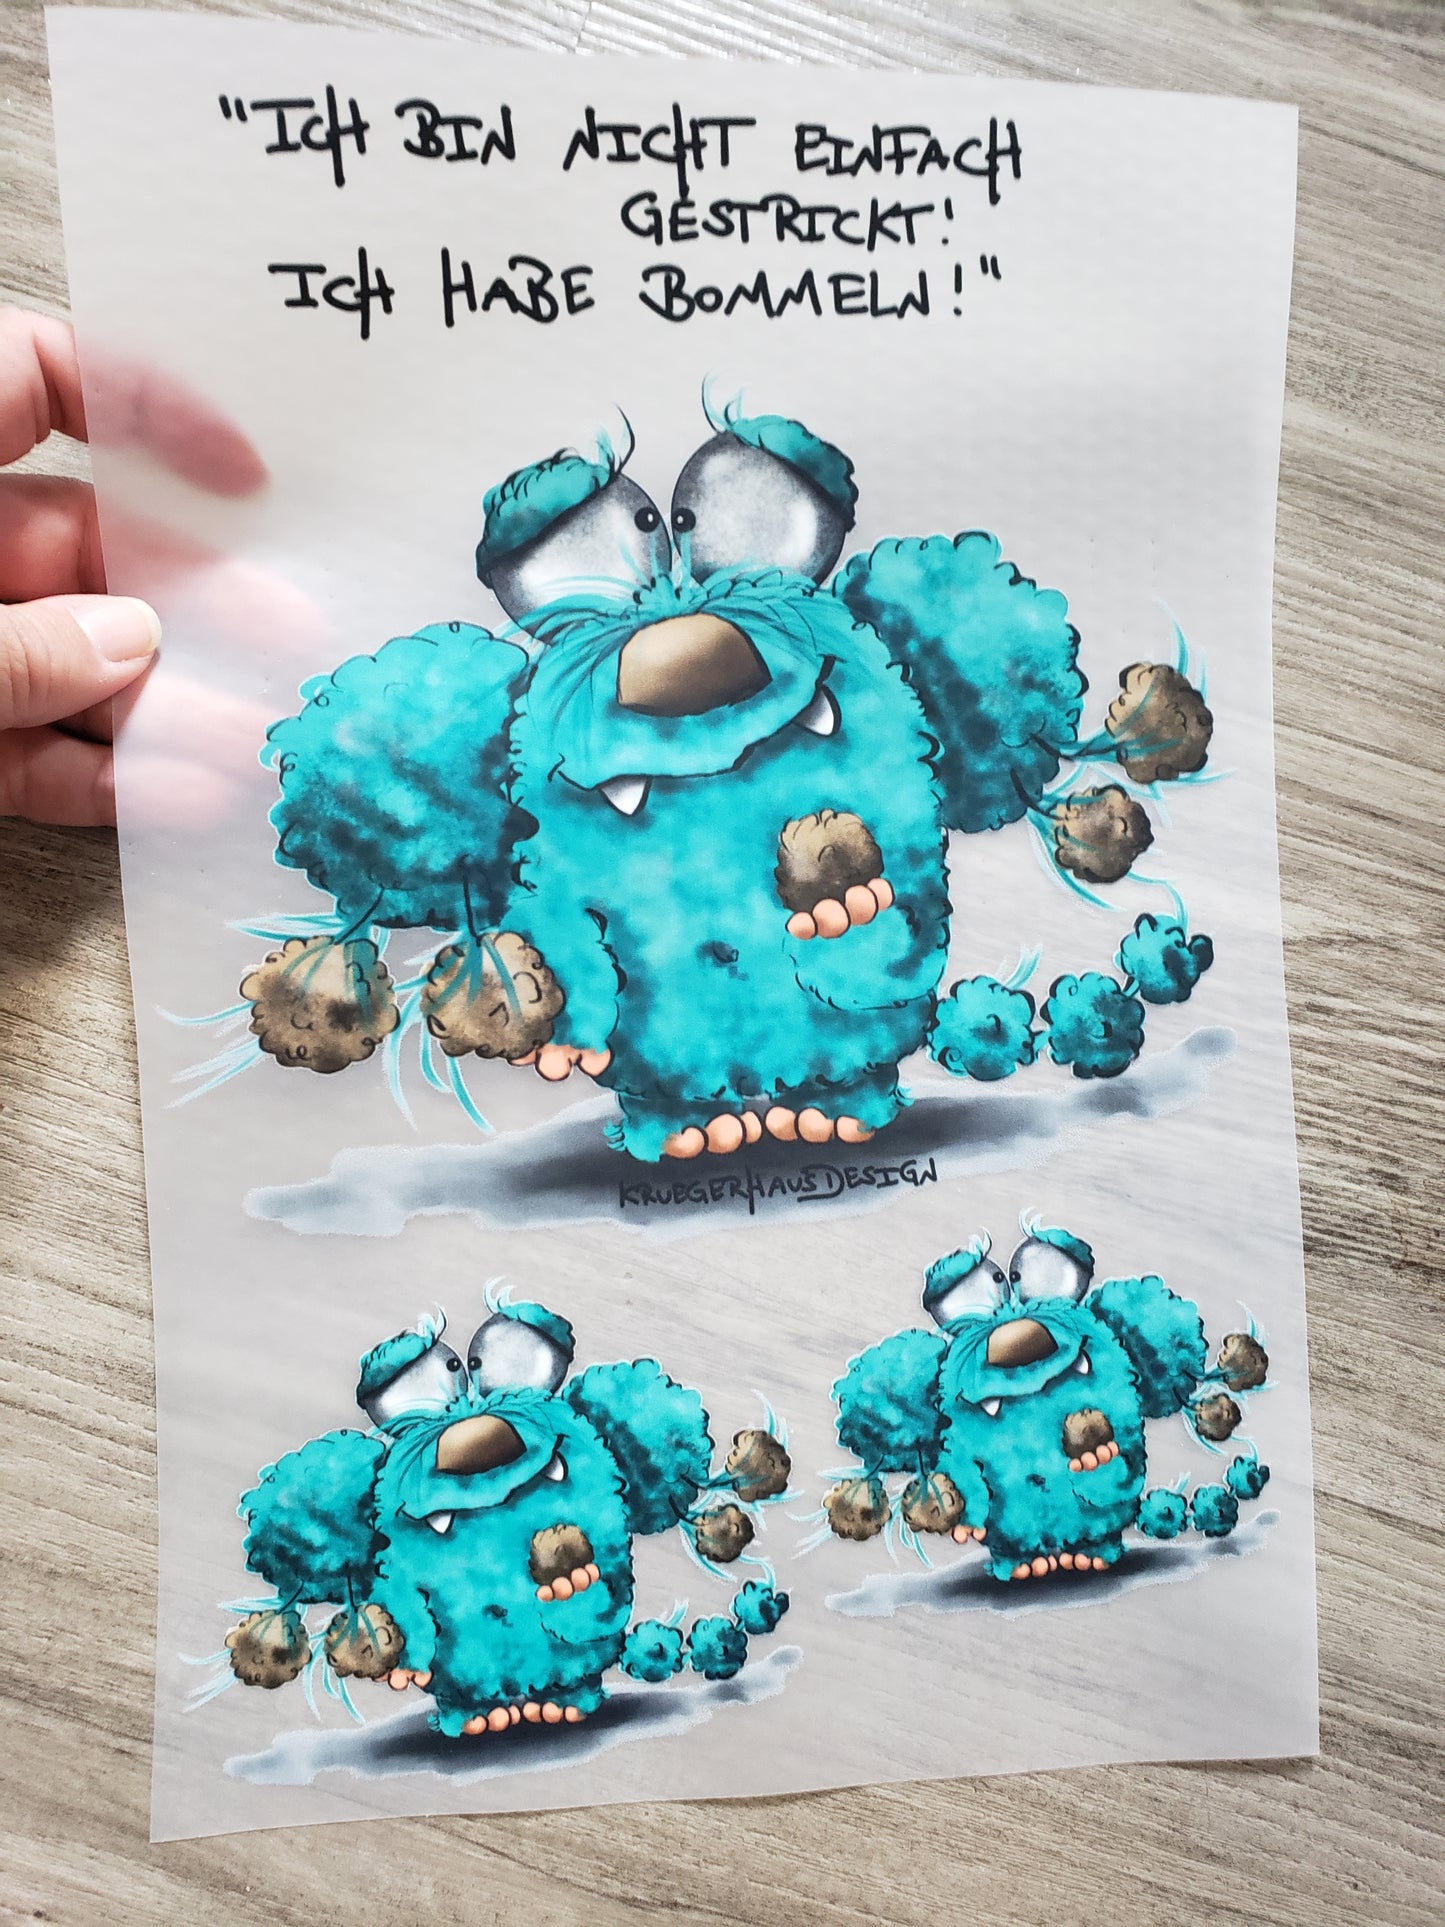 A4 Bügelbild Kruegerhausdesign Monster, "Ich bin nicht einfach gestrickt..." mit Liebe illustriert